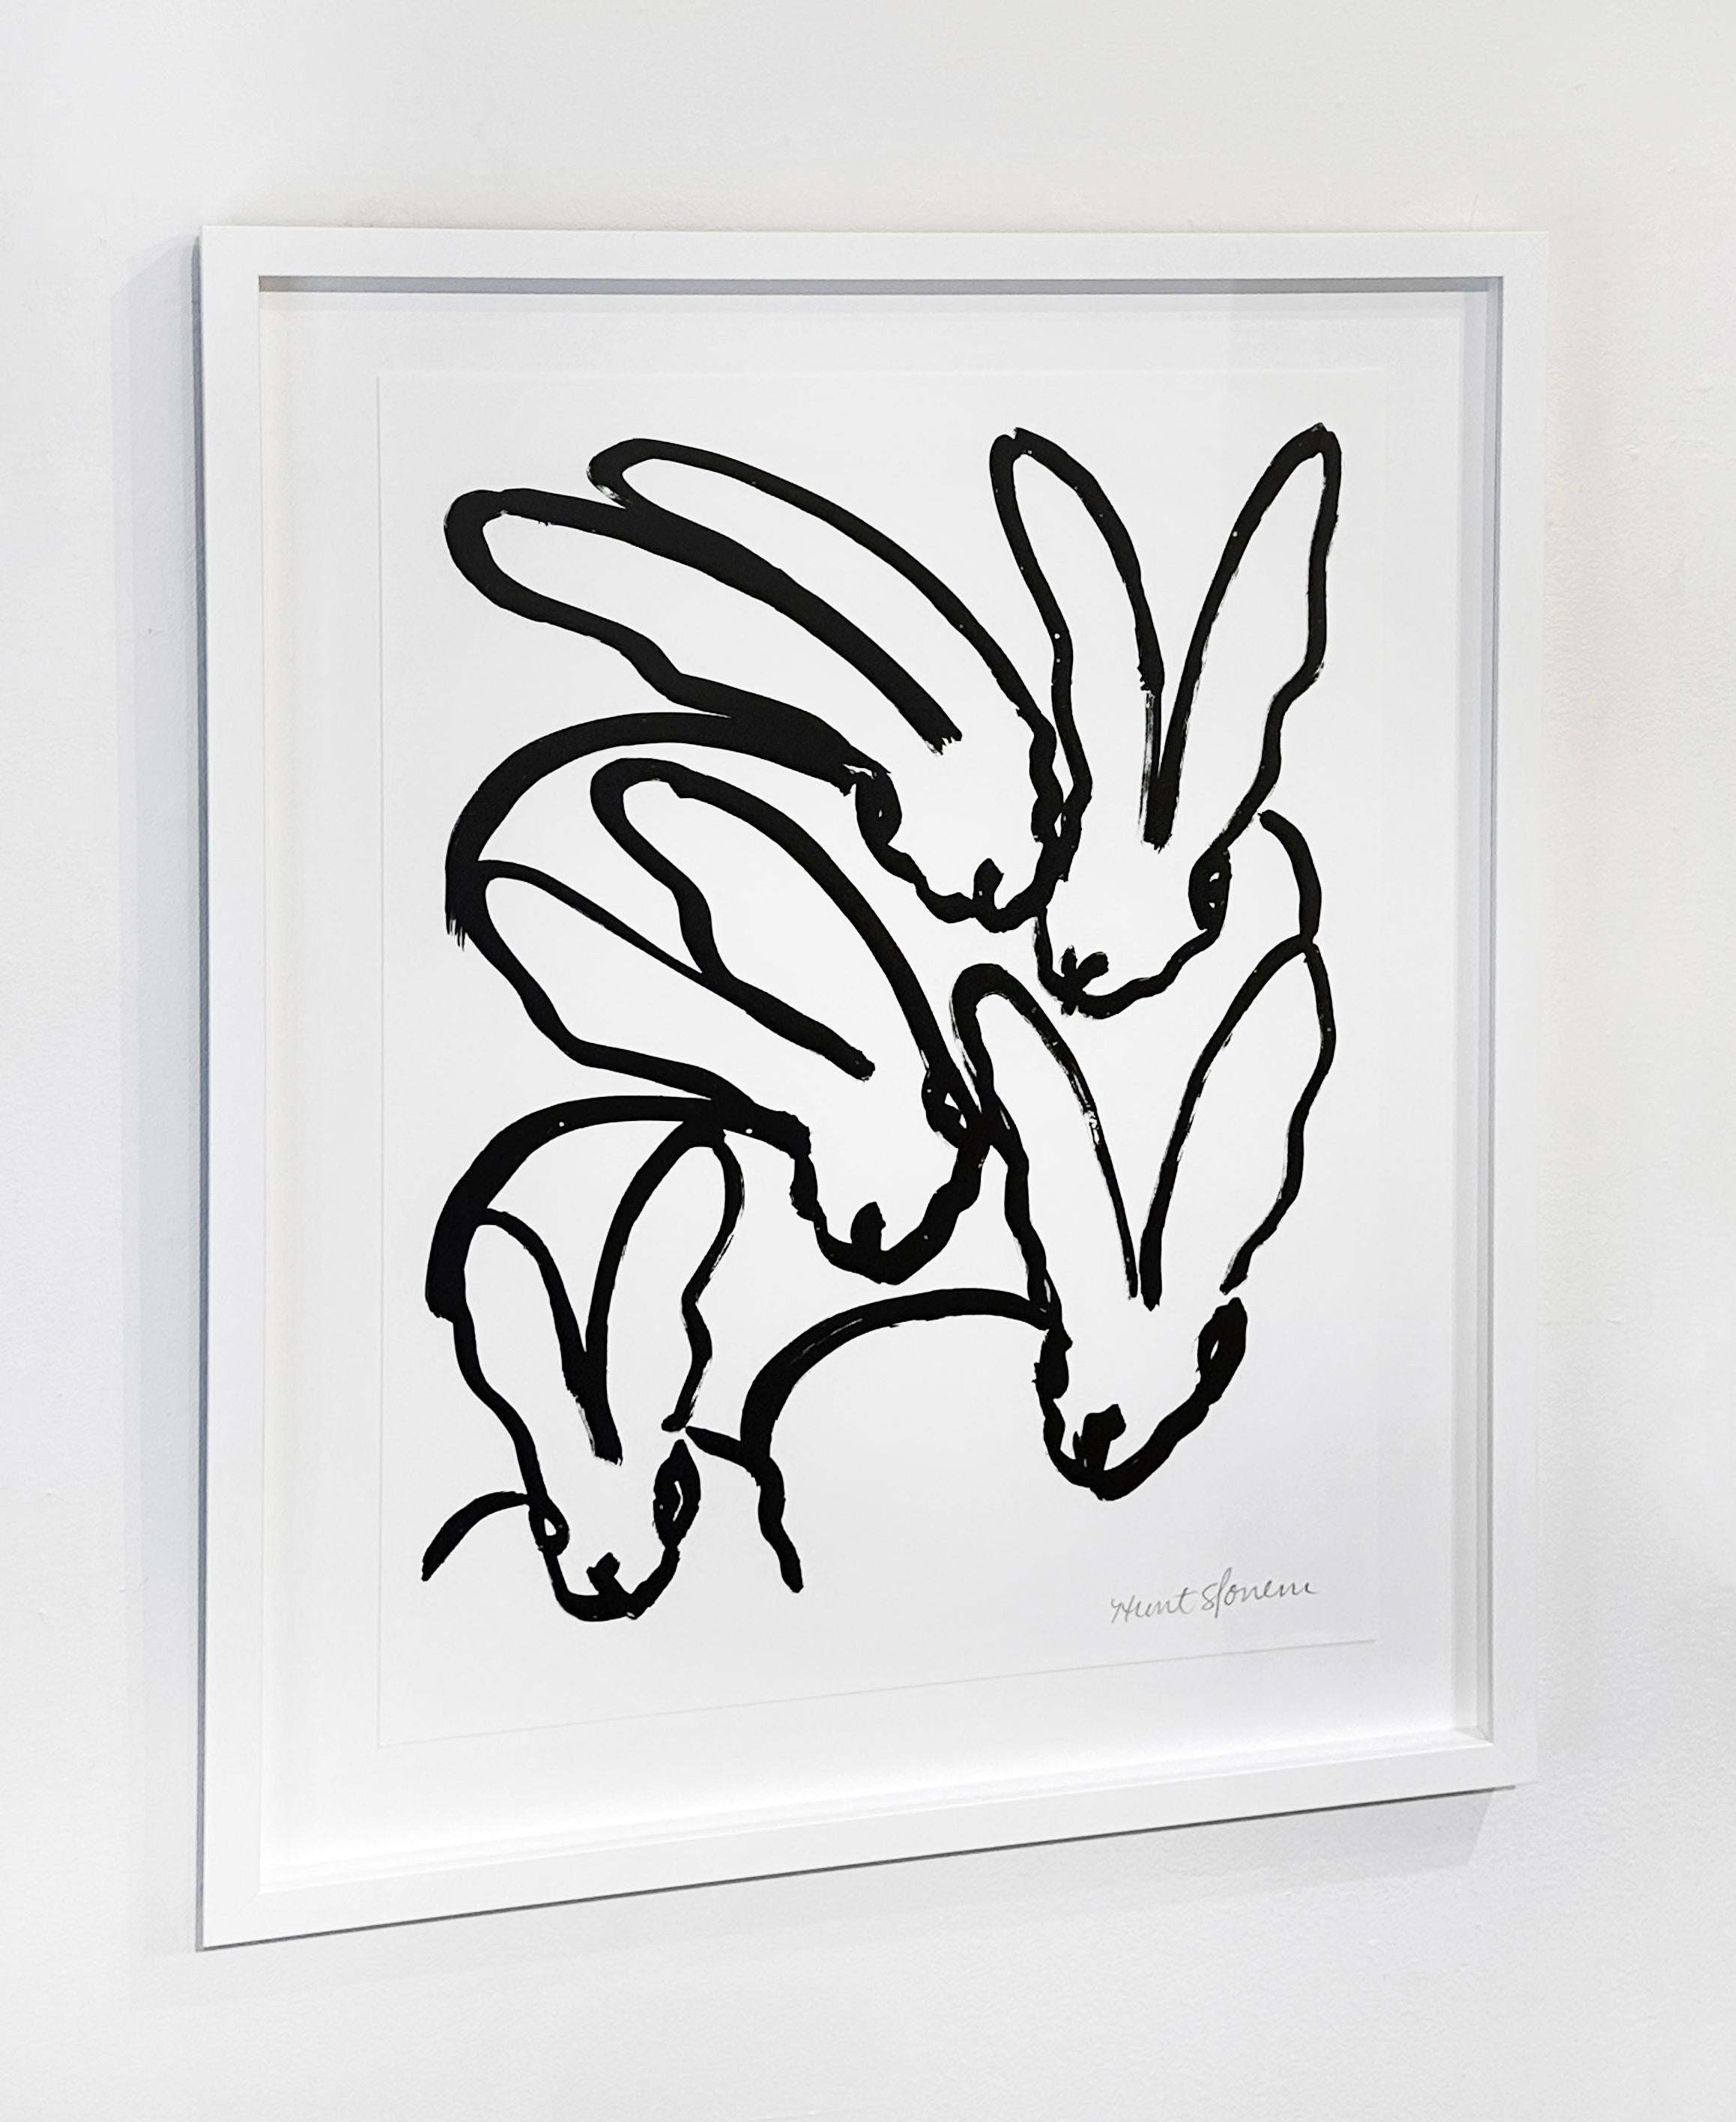 Künstler:  Slonem, Hunt
Titel:  Weiße Hasen VI
Serie:  Kaninchen
Datum:  2017
Medium:  Lithographie auf Papier
Ungerahmt Abmessungen:  24